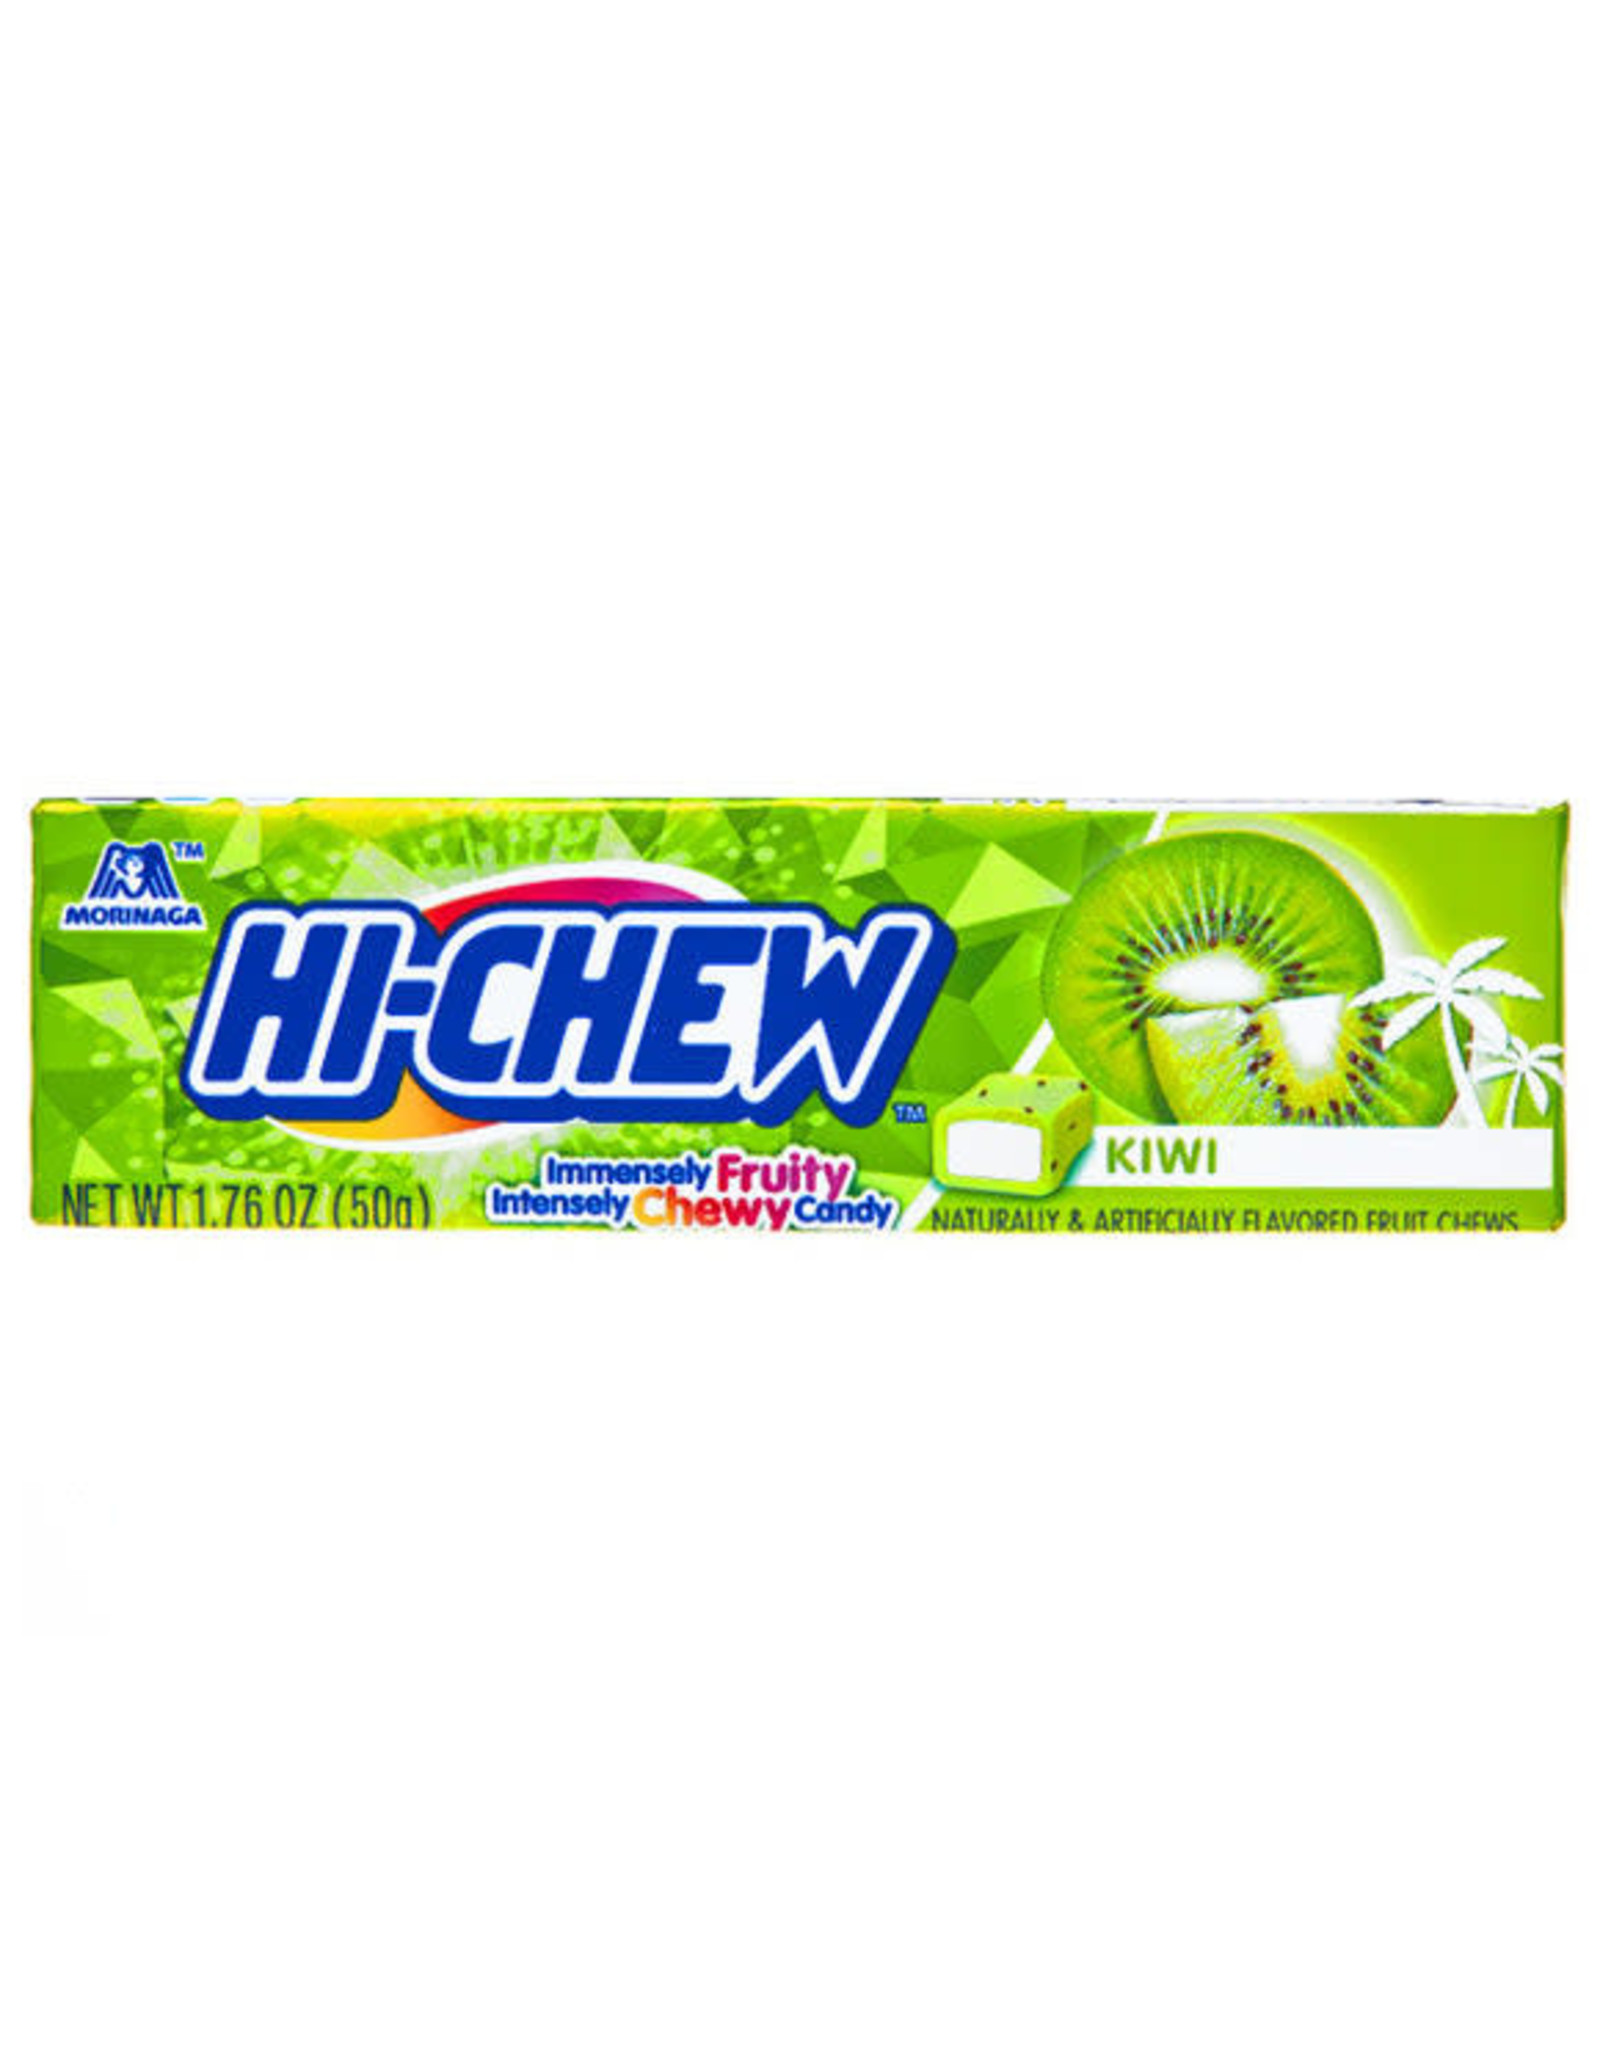 Hi-Chew: Kiwi